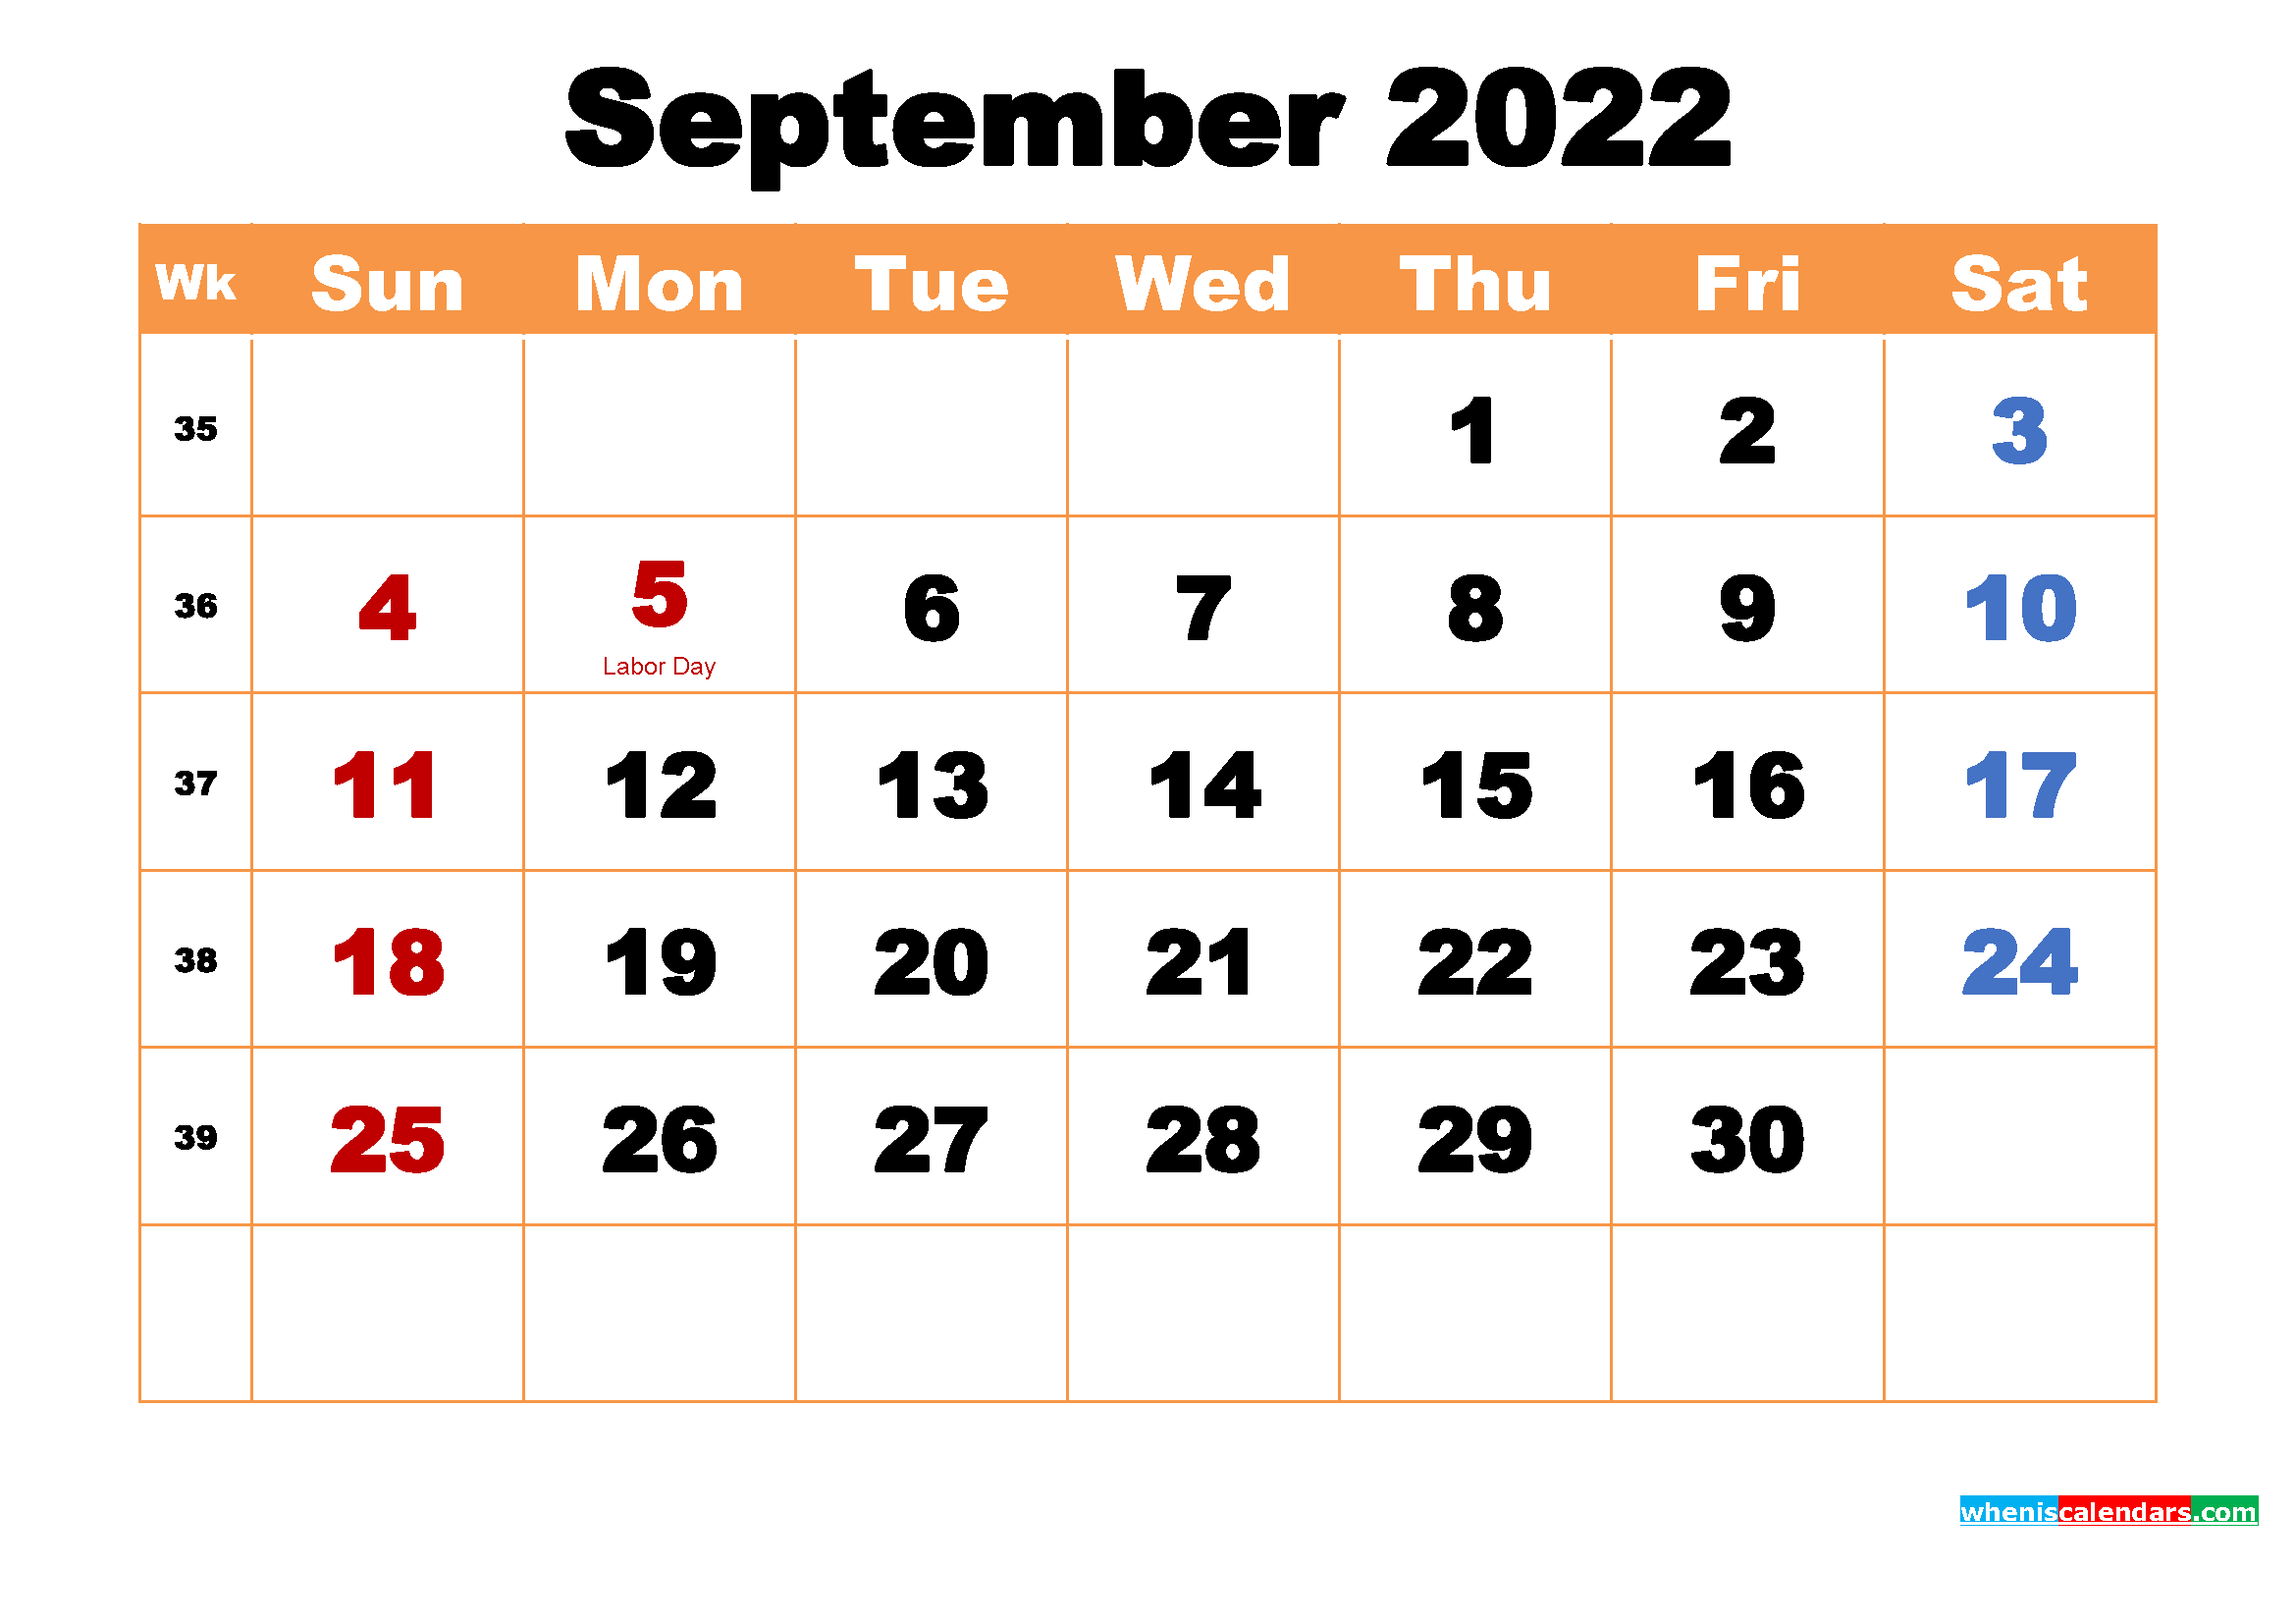 September 2022 Calendar Wallpapers High Resolution